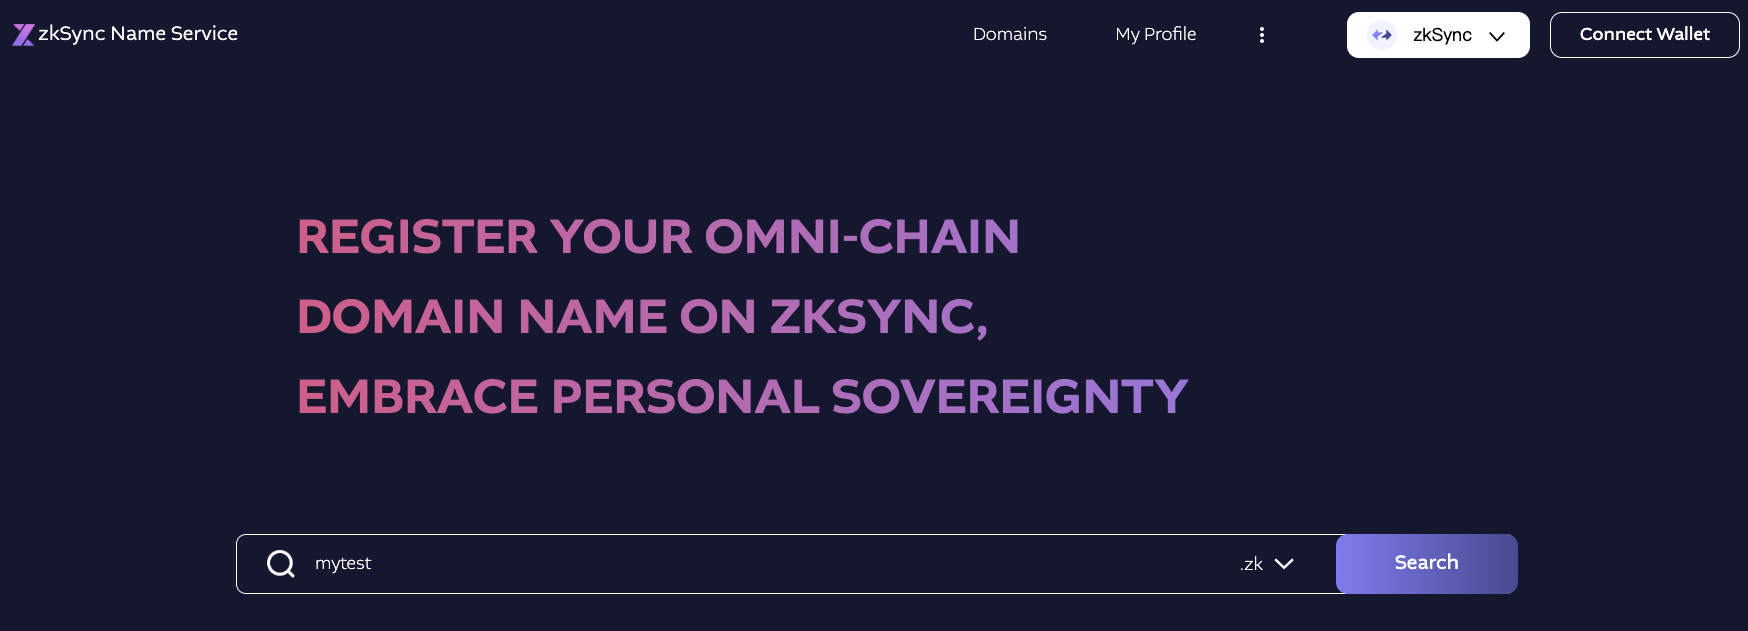 zkSync Name Service Search